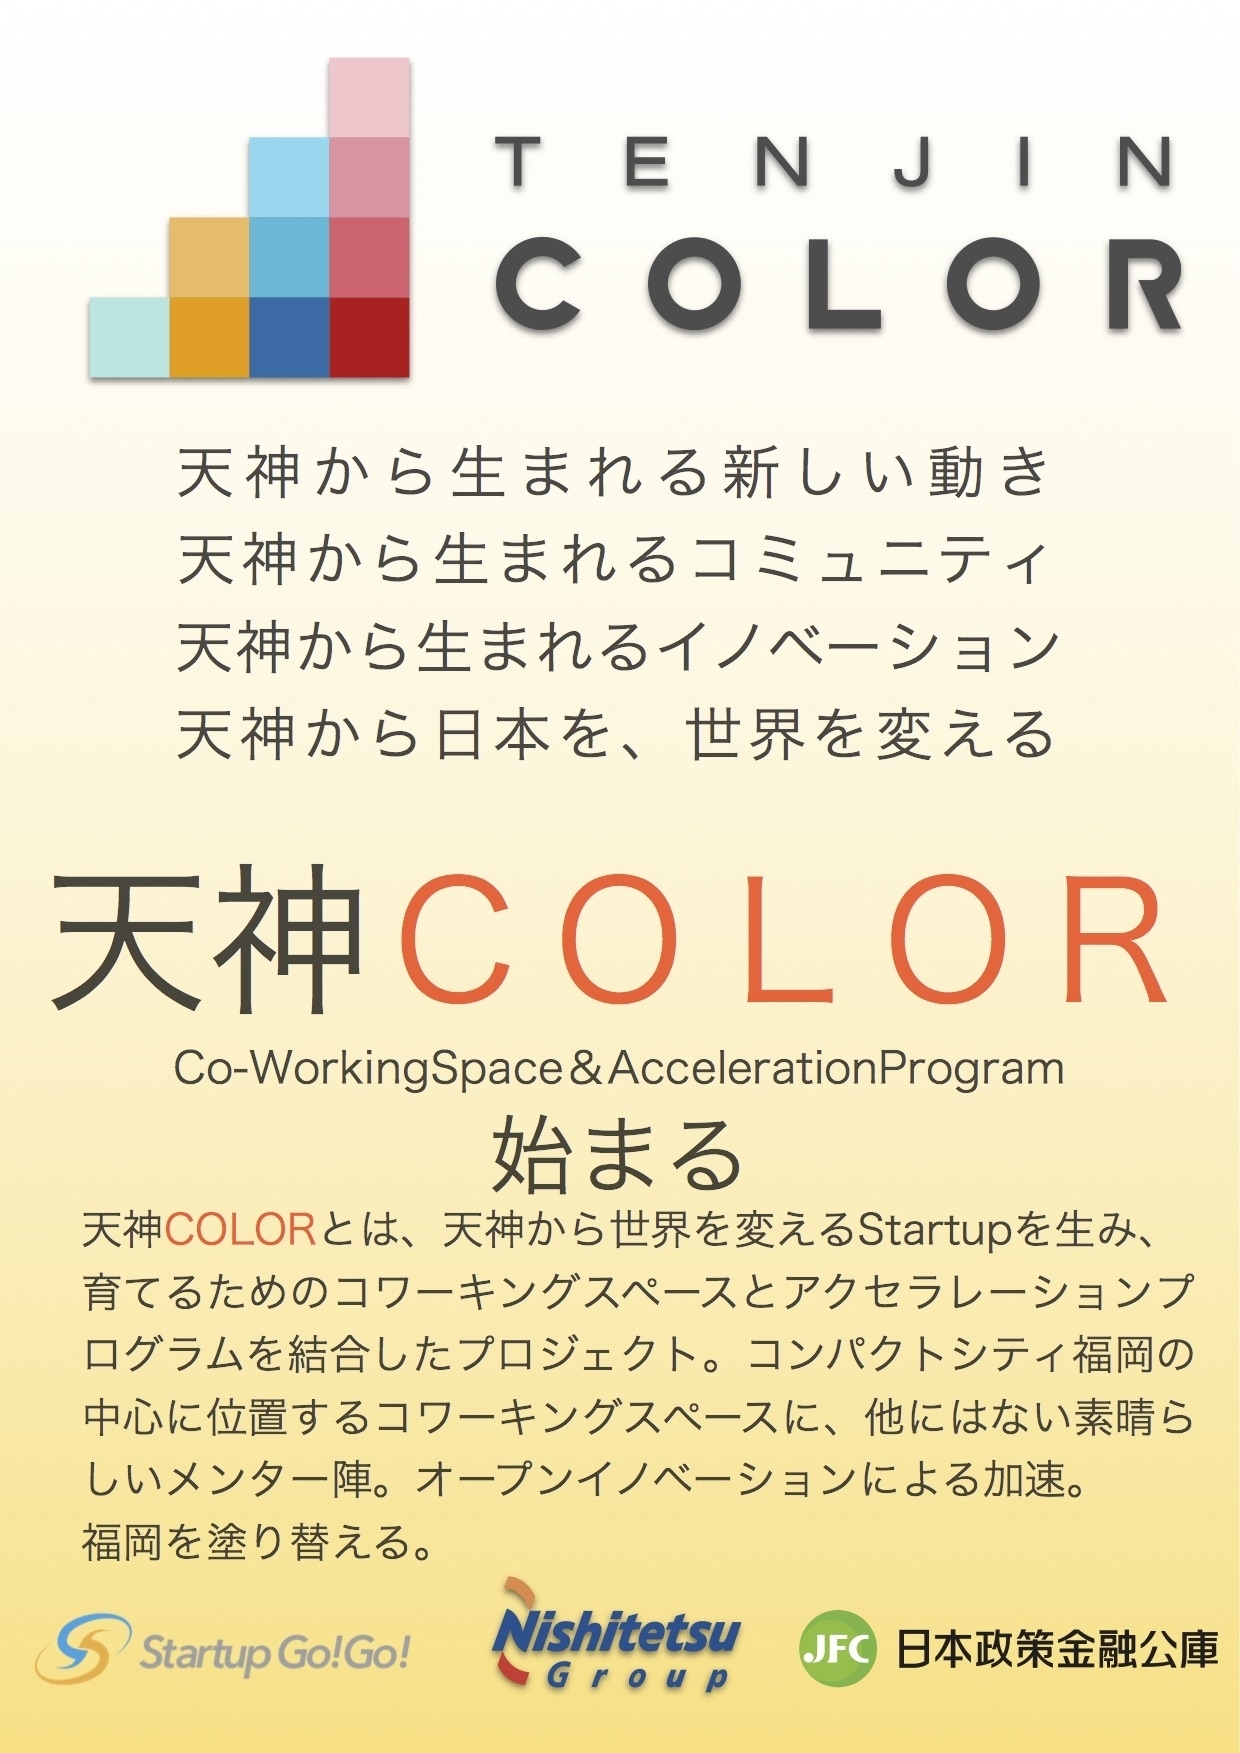 九州初 福岡 天神を拠点とした事業起業家育成プログラム 天神color 開始 Startupgo Go と西日本鉄道 日本政策金融公庫が協力して実施 Startupgo Go 実行委員会のプレスリリース